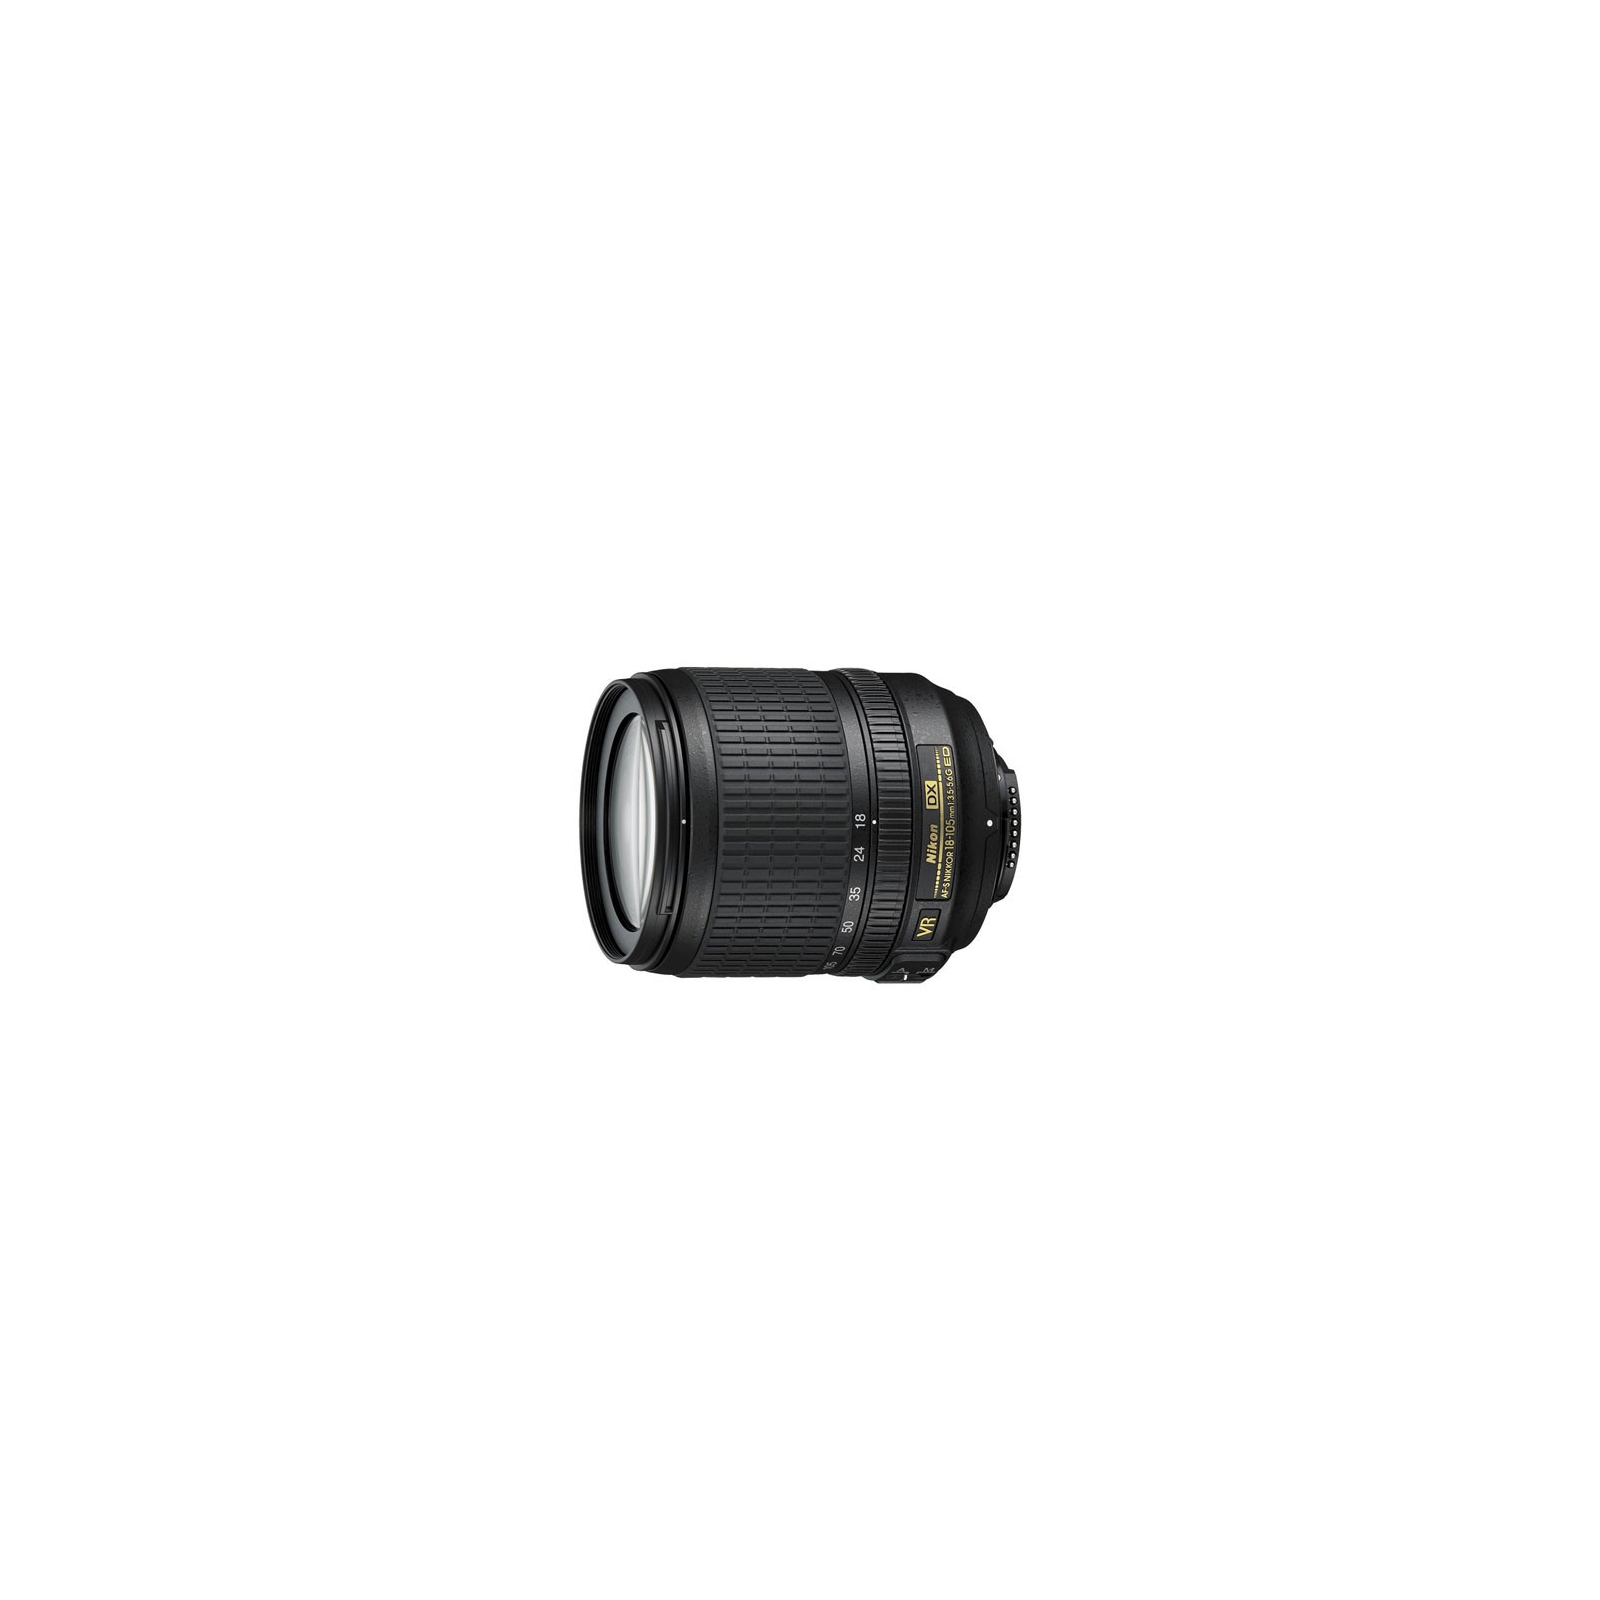 Объектив Nikon AF-S 18-105mm f/3.5-5.6G ED VR DX (JAA805DA/JAA805DB)